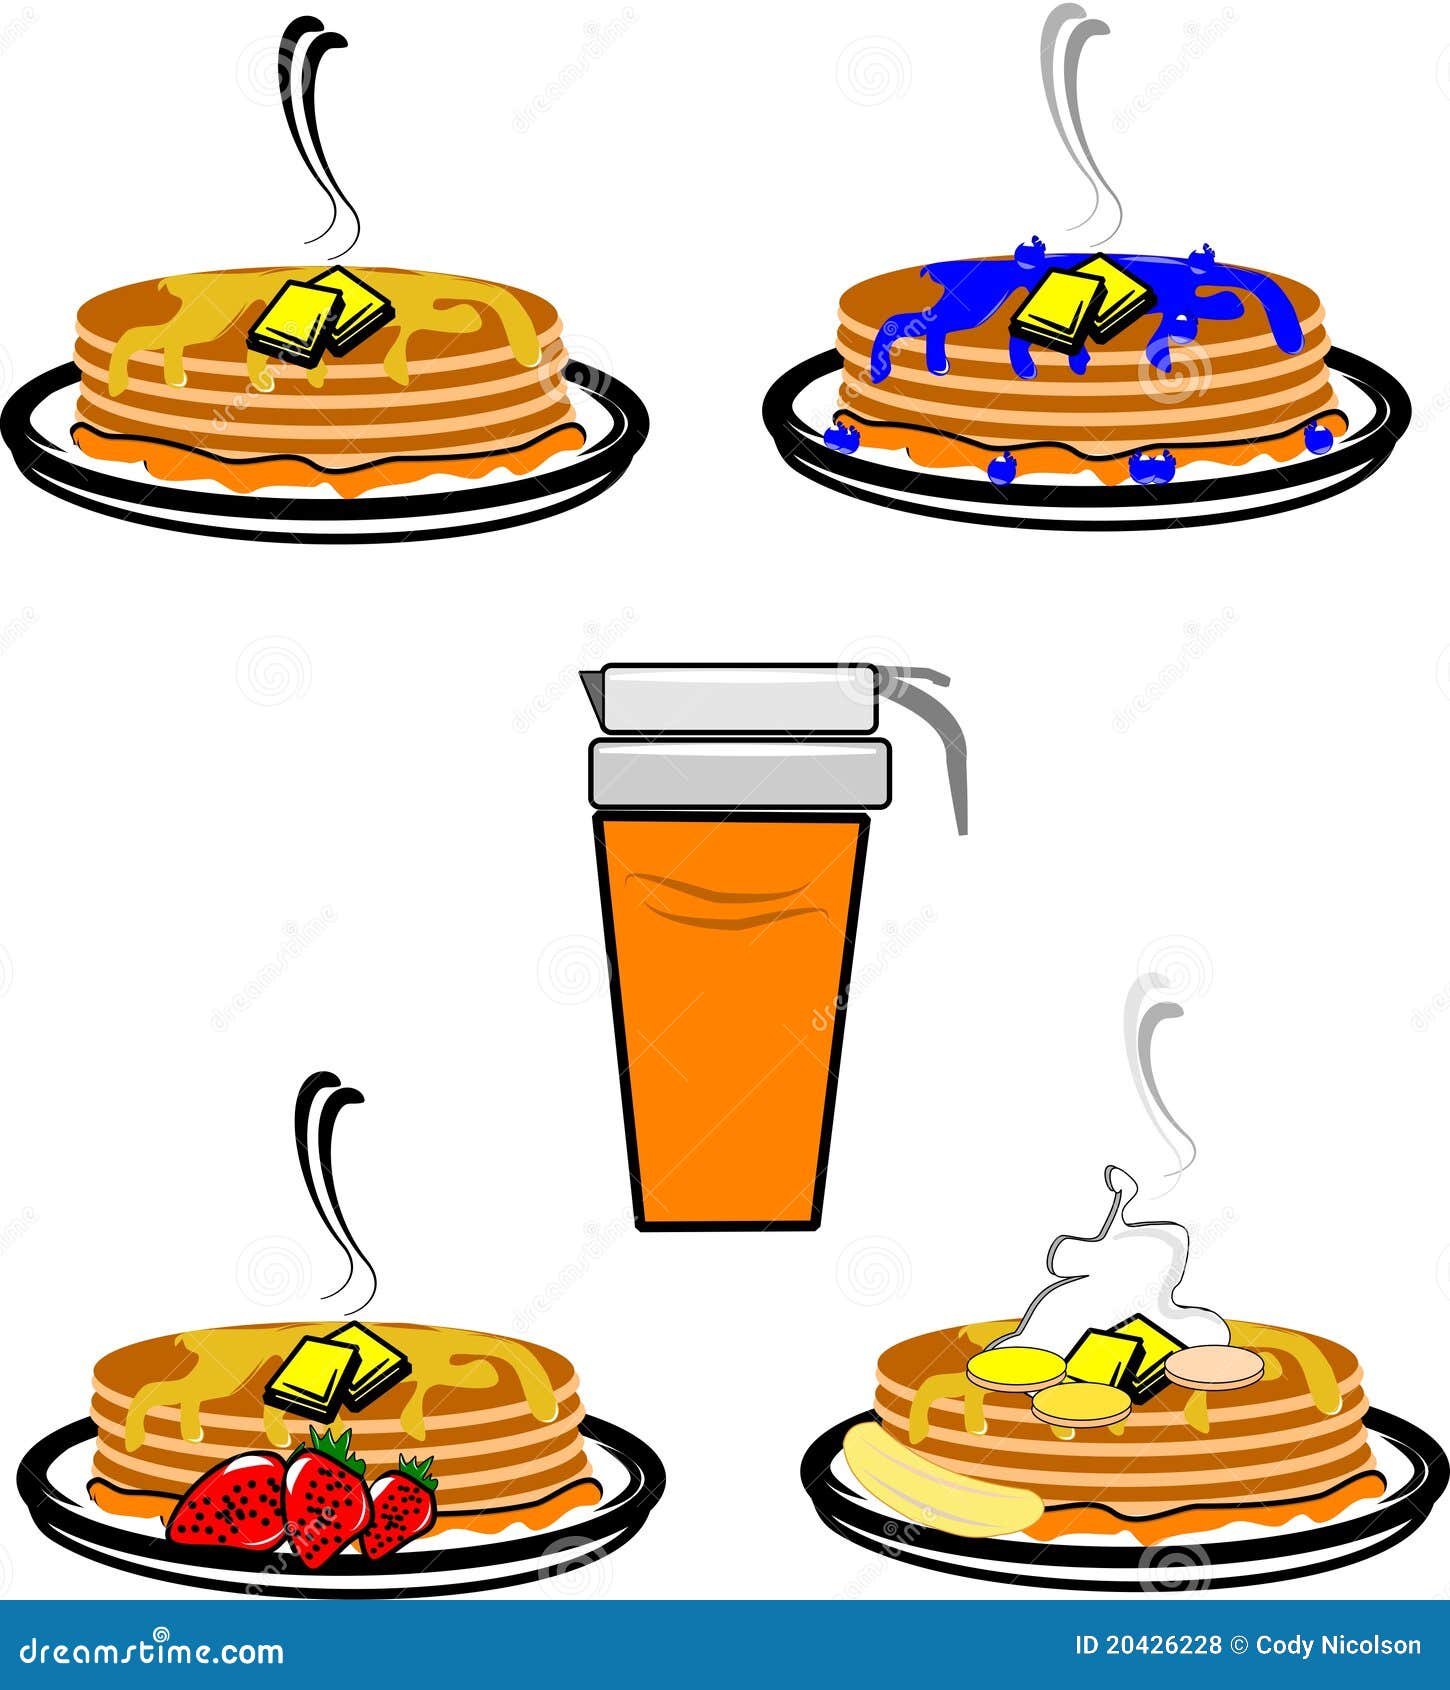 Pancakes Drawing At Getdrawings  Pancake Transparent PNG  550x550  Free  Download on NicePNG